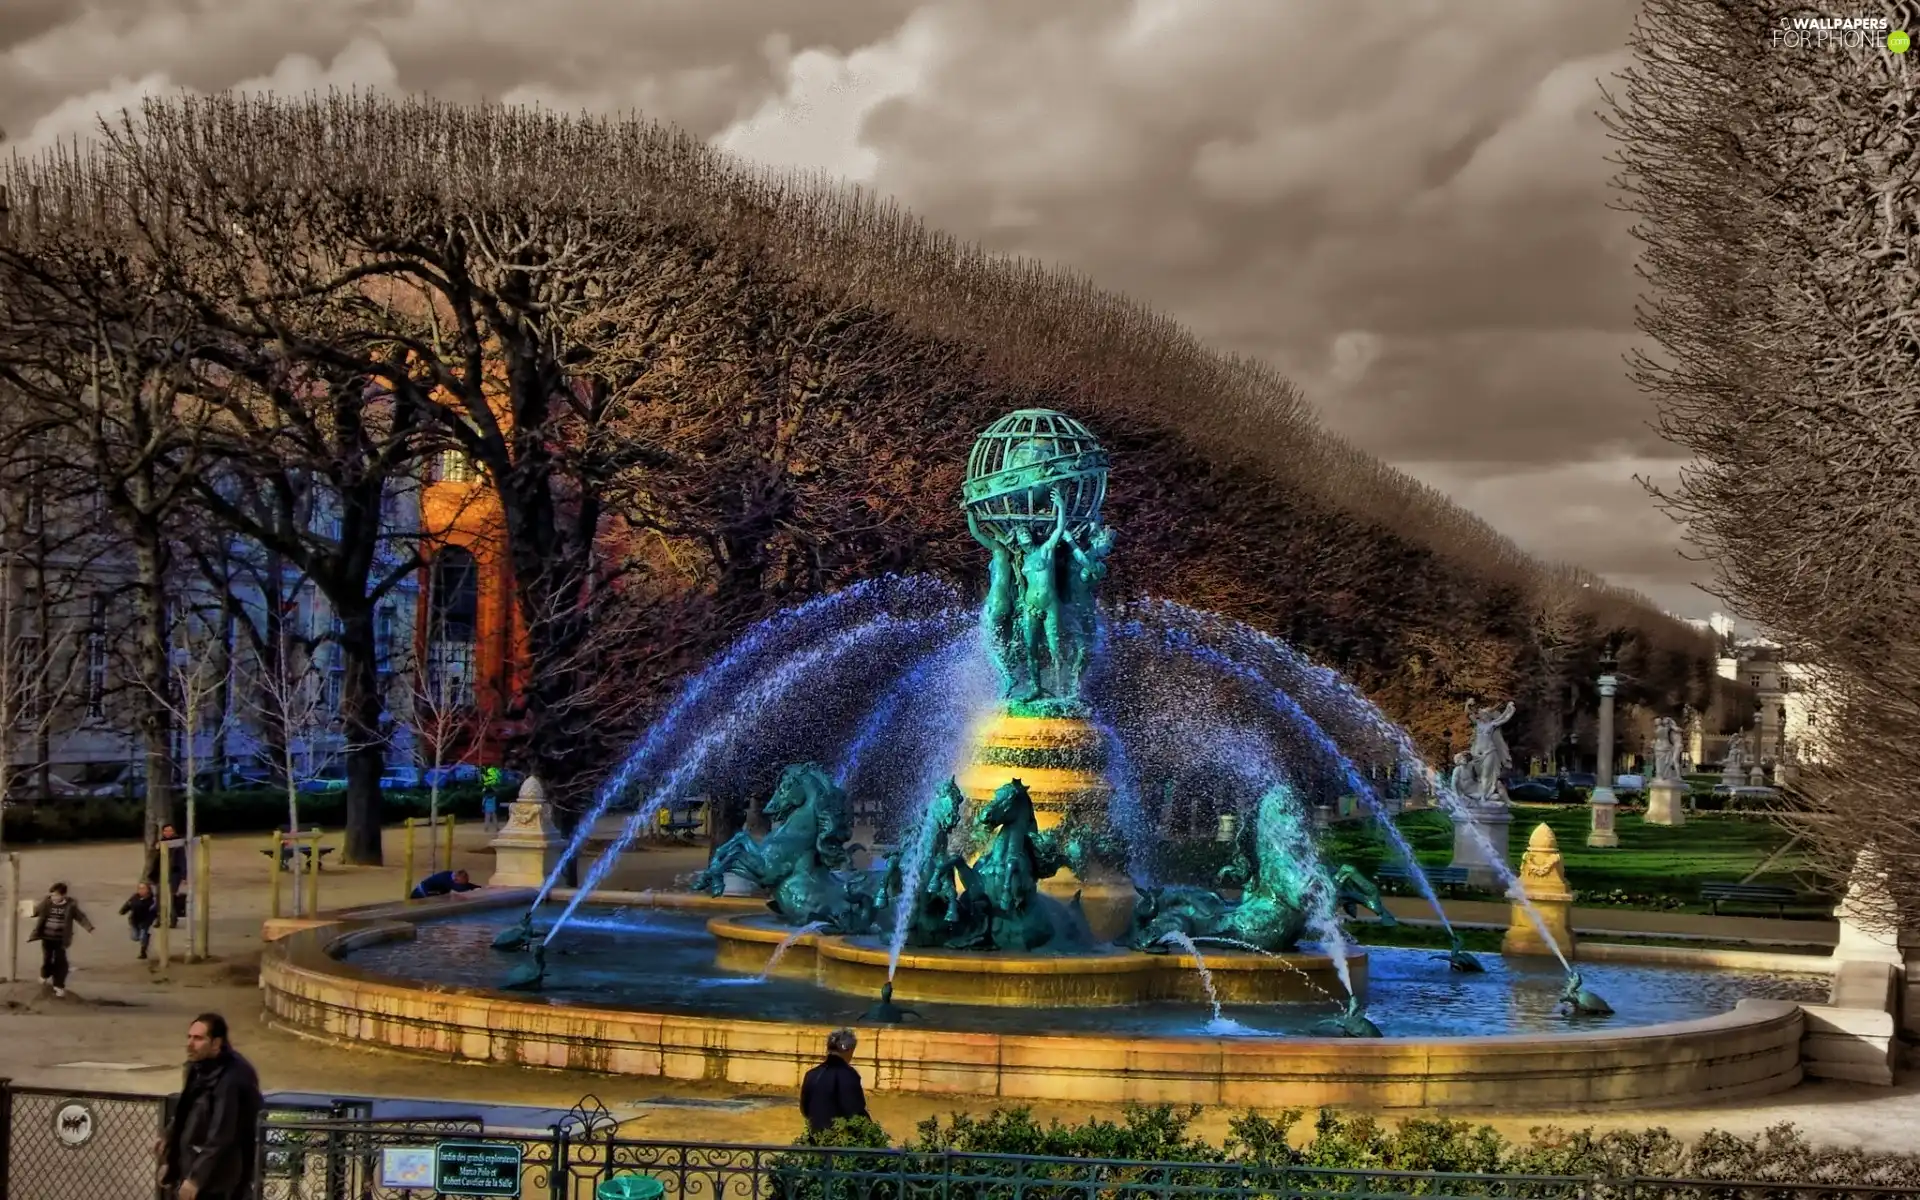 fountain, Luxembourg Gardens, Paris, de observatoire